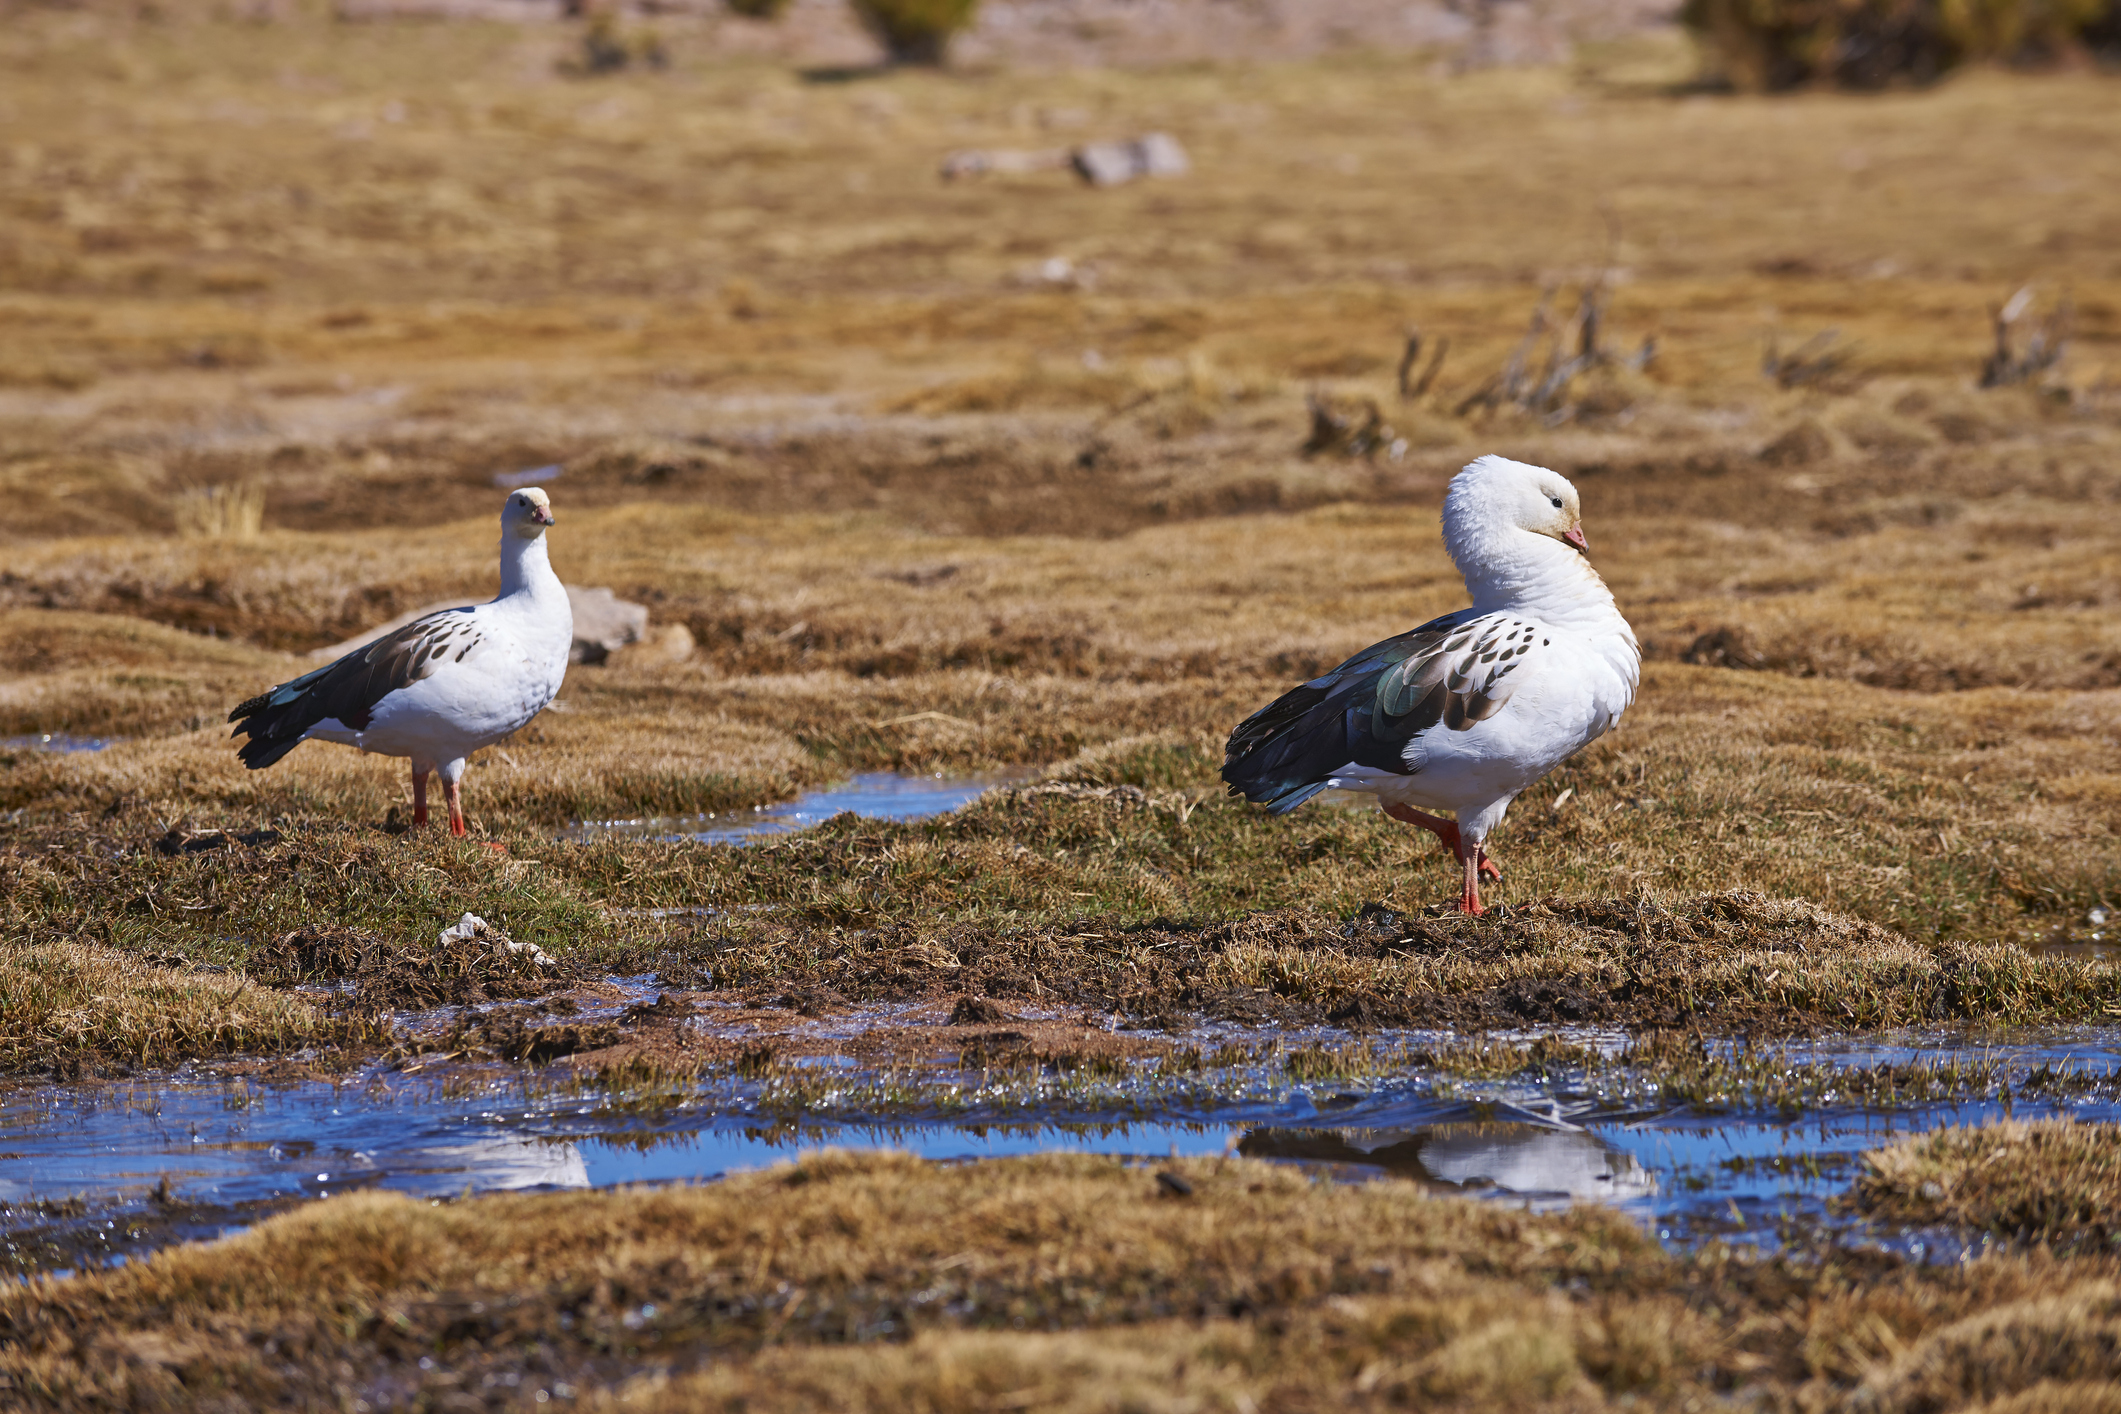 El primer caso confirmado de gripe aviar en Argentina fue detectado en un ave silvestre de la especie Huallata o Ganso Andino en la provincia de Jujuy (Getty)